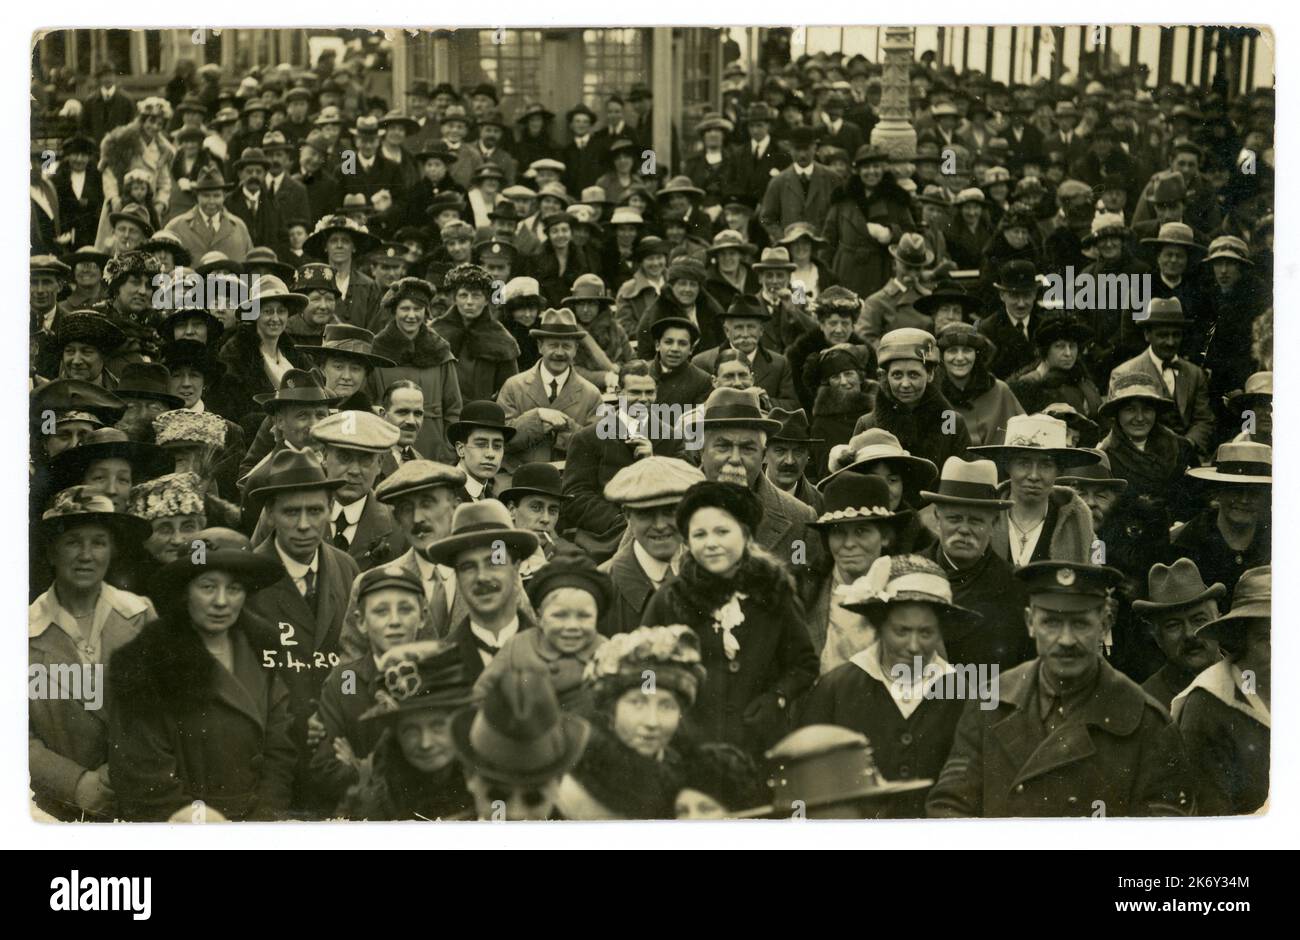 Ursprüngliche Feiertagsmassen der Arbeiterklasse aus den 20er Jahren vom 5. April 1920, britischer Badeort, viele Charaktere und Mode, darunter flache Mützen und homburger Hüte. GROSSBRITANNIEN Stockfoto